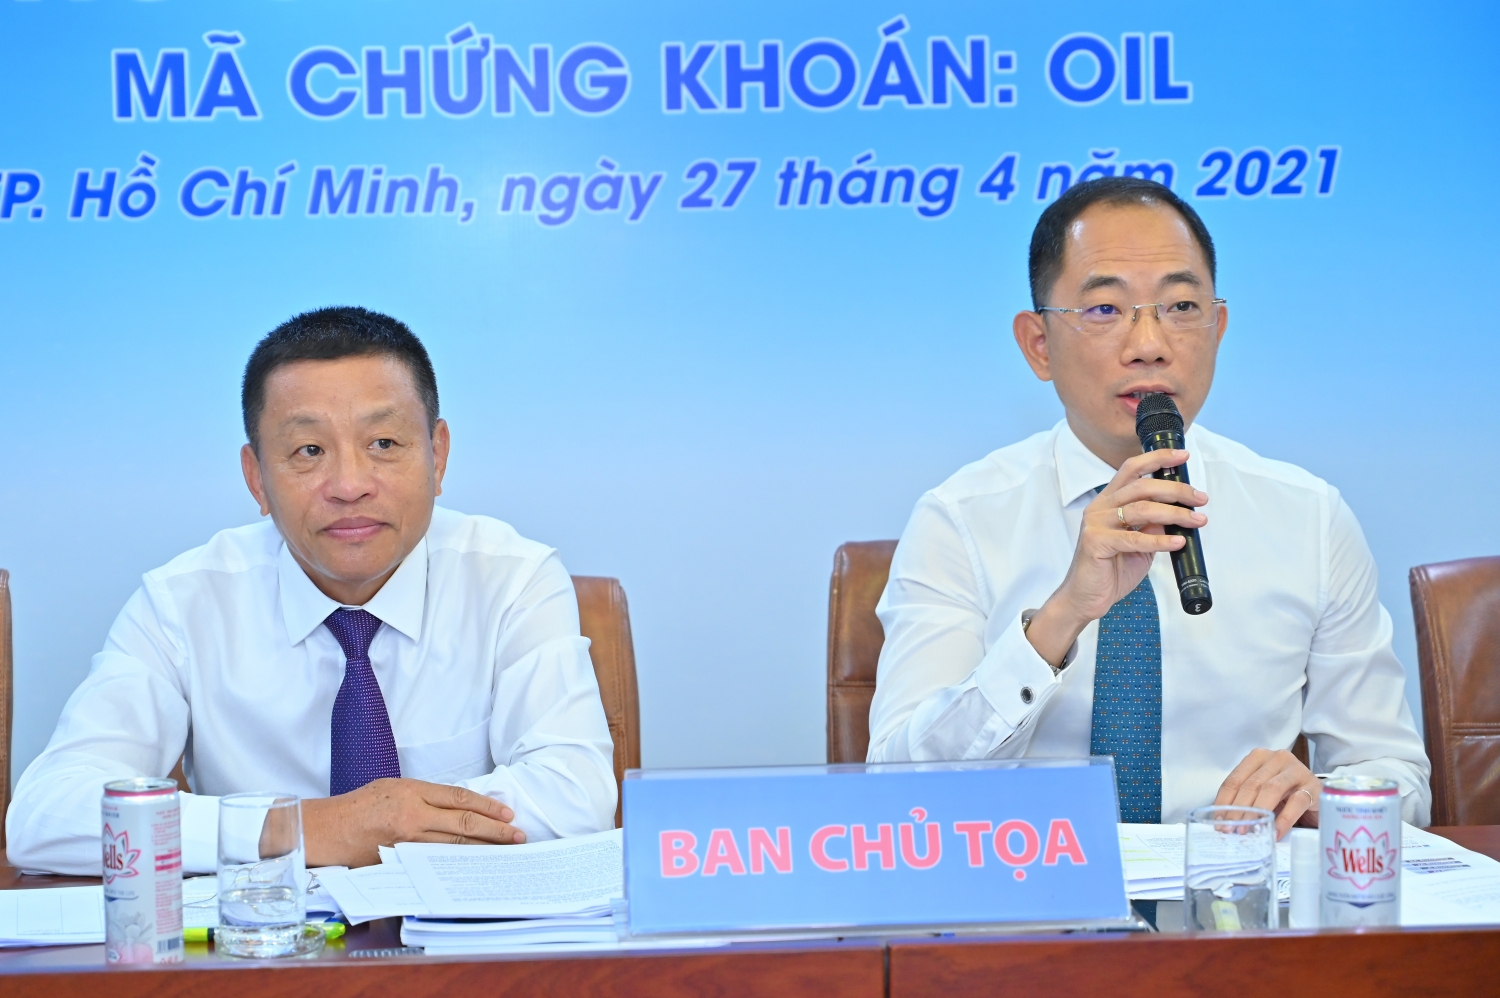 Ông Cao Hoài Dương – Chủ tịch HĐQT PVOIL (phải) và ông Đoàn Văn Nhuộm – Tổng Giám đốc PVOIL (trái) trả lời ý kiến của cổ đông